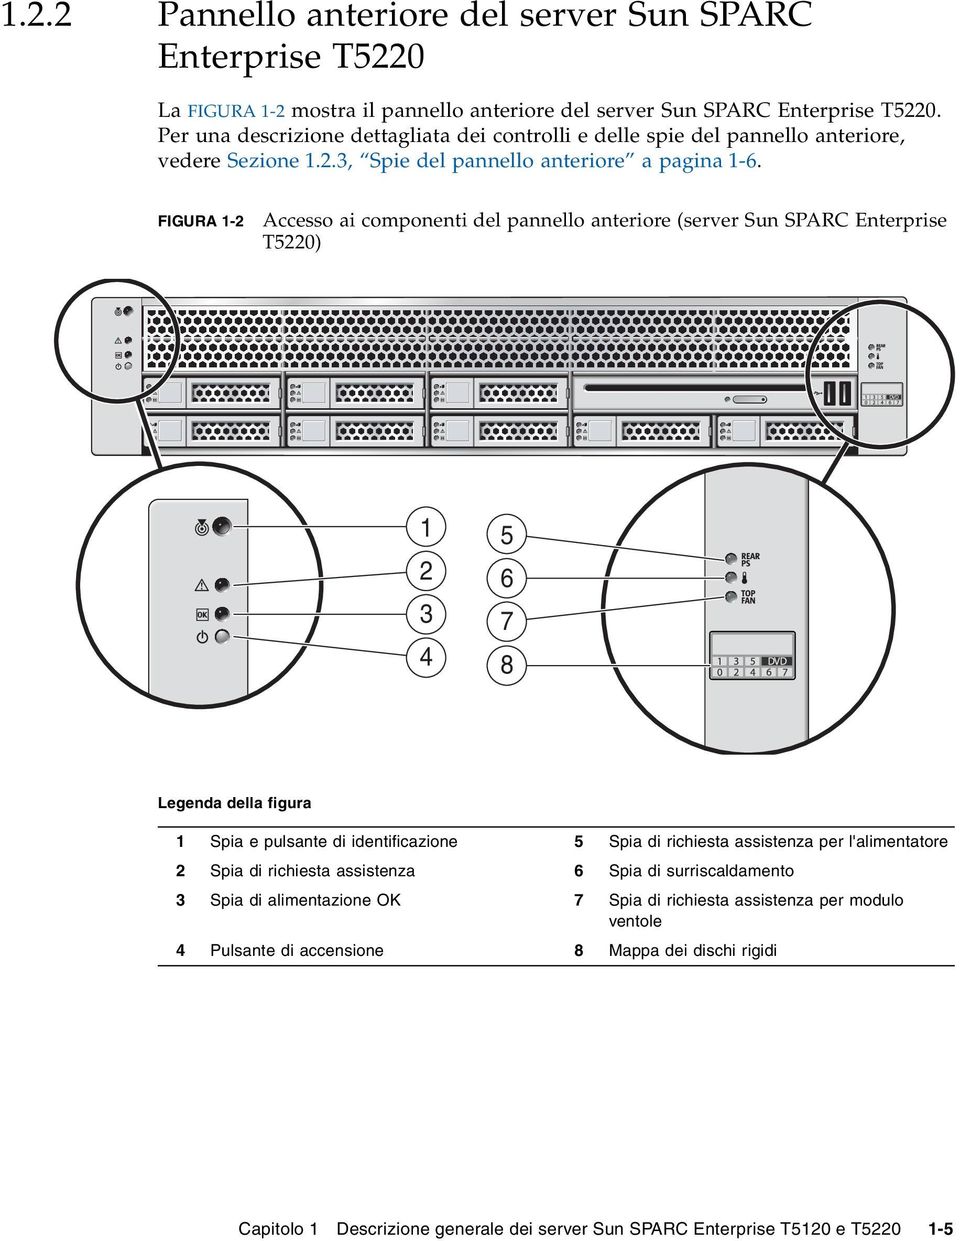 FIGURA 1-2 Accesso ai componenti del pannello anteriore (server Sun SPARC Enterprise T5220) 1 2 3 4 5 6 7 8 Legenda della figura 1 Spia e pulsante di identificazione 5 Spia di richiesta